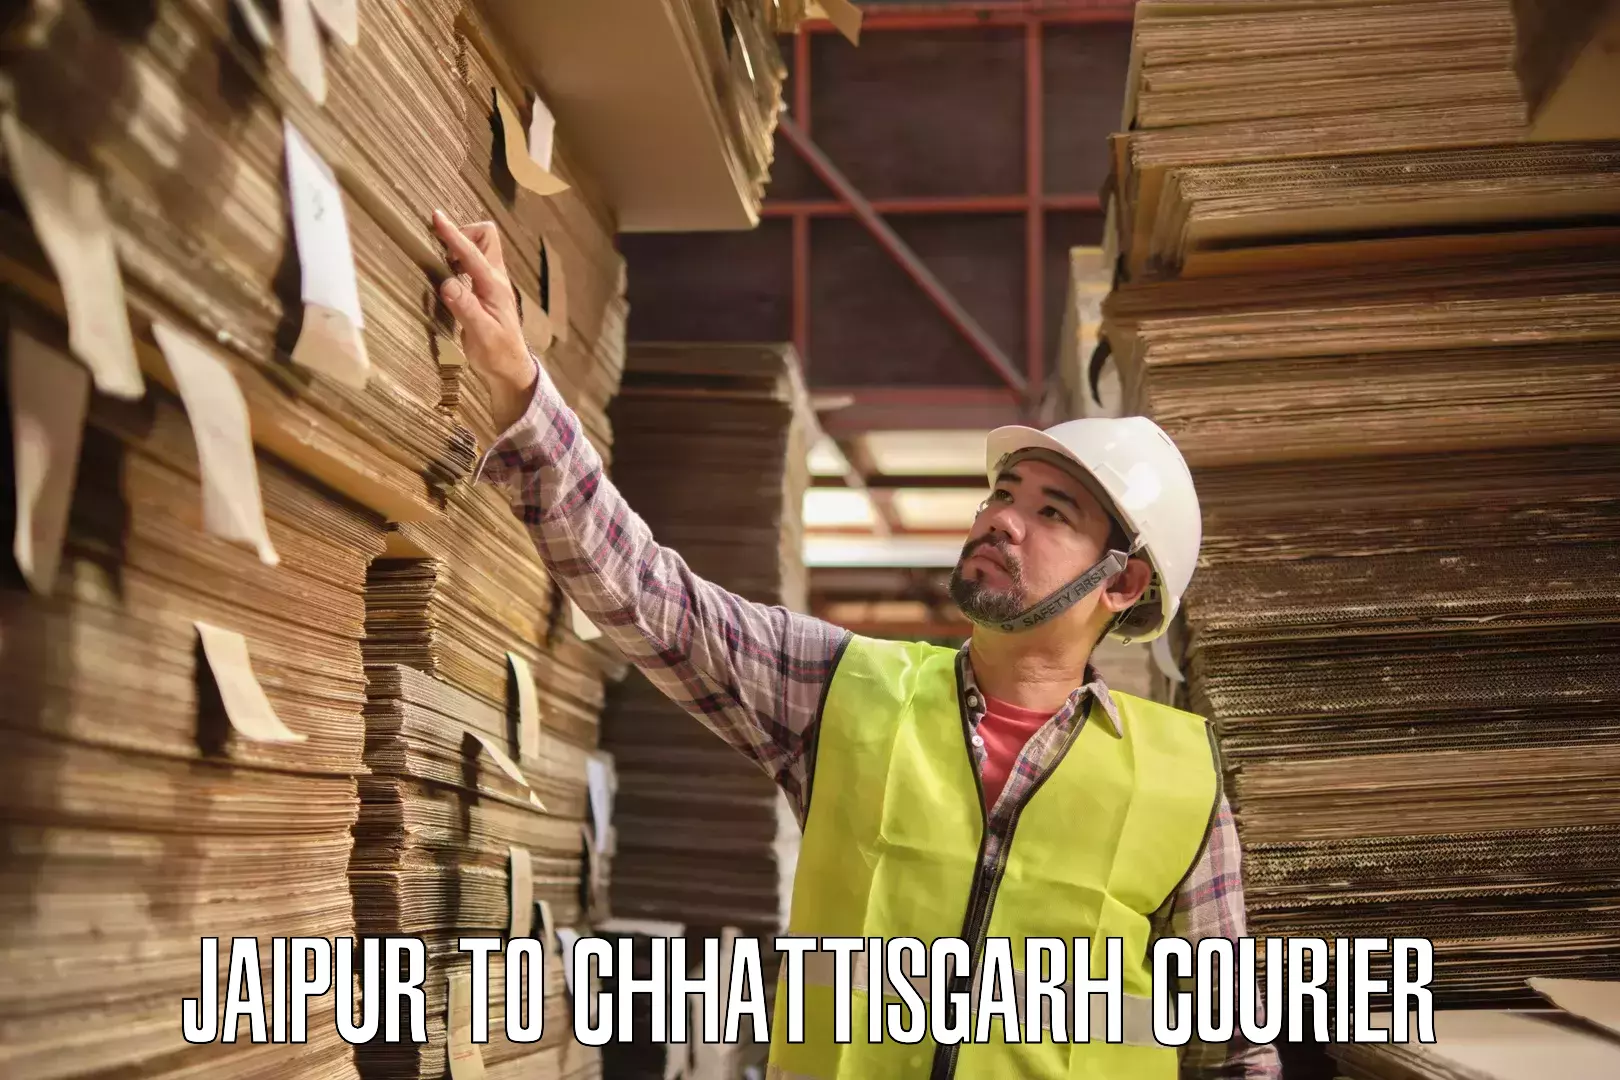 Cargo courier service Jaipur to Bijapur Chhattisgarh